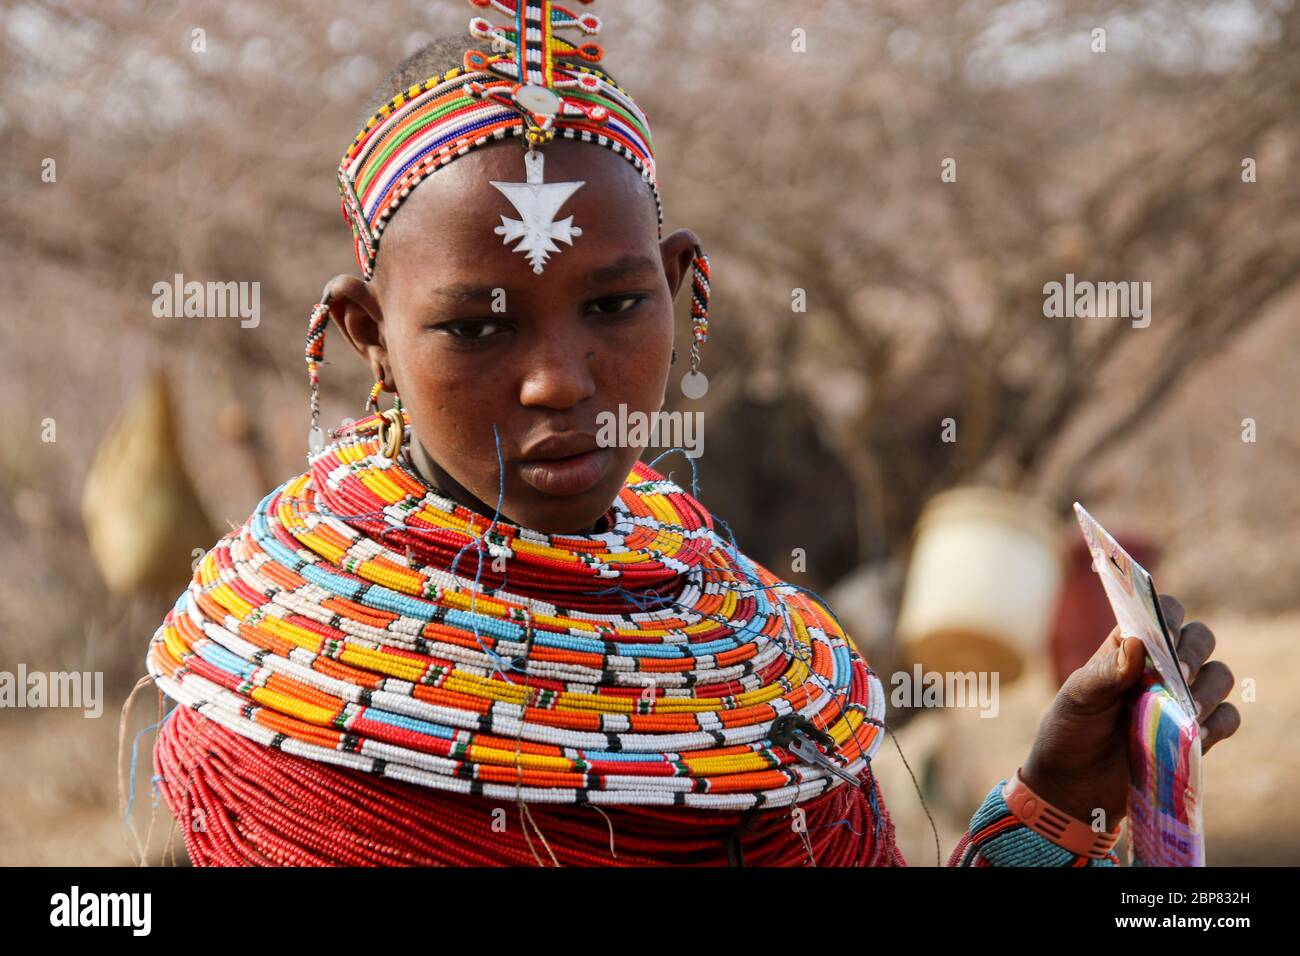 Portrait d'une femme Samburu Maasai. Samburu Maasai un groupe ethnique de semi-nomades photographiés à Samburu, Kenya Banque D'Images